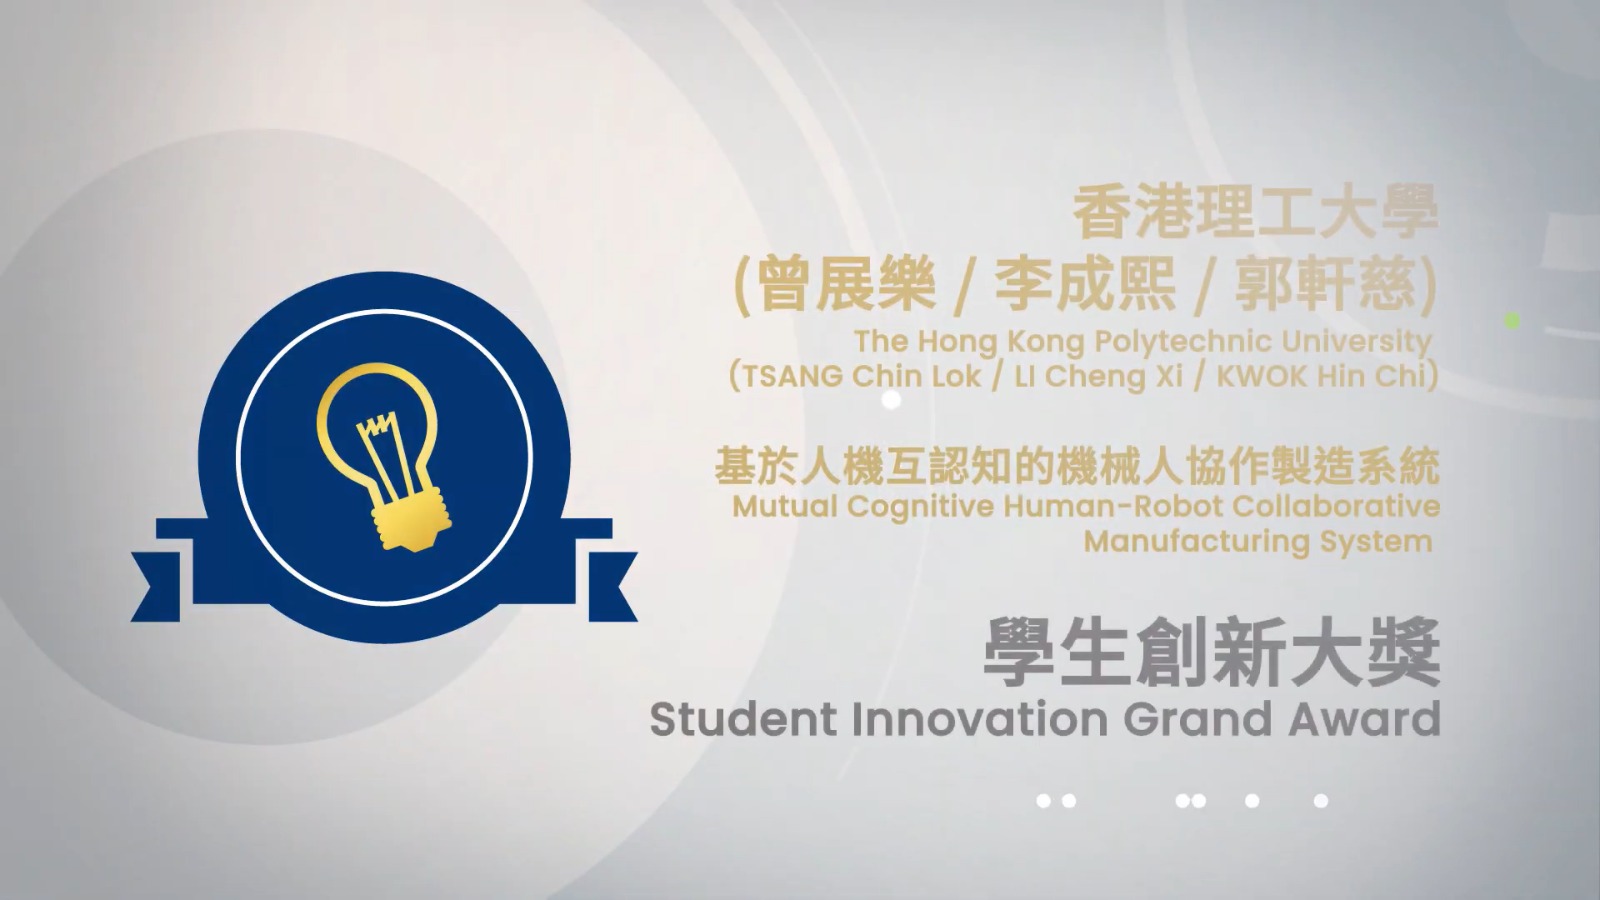 進入2022香港資訊及通訊科技獎 大獎小故事 學生創新大獎作品 - 基於人機互認知的機械人協作製造系統